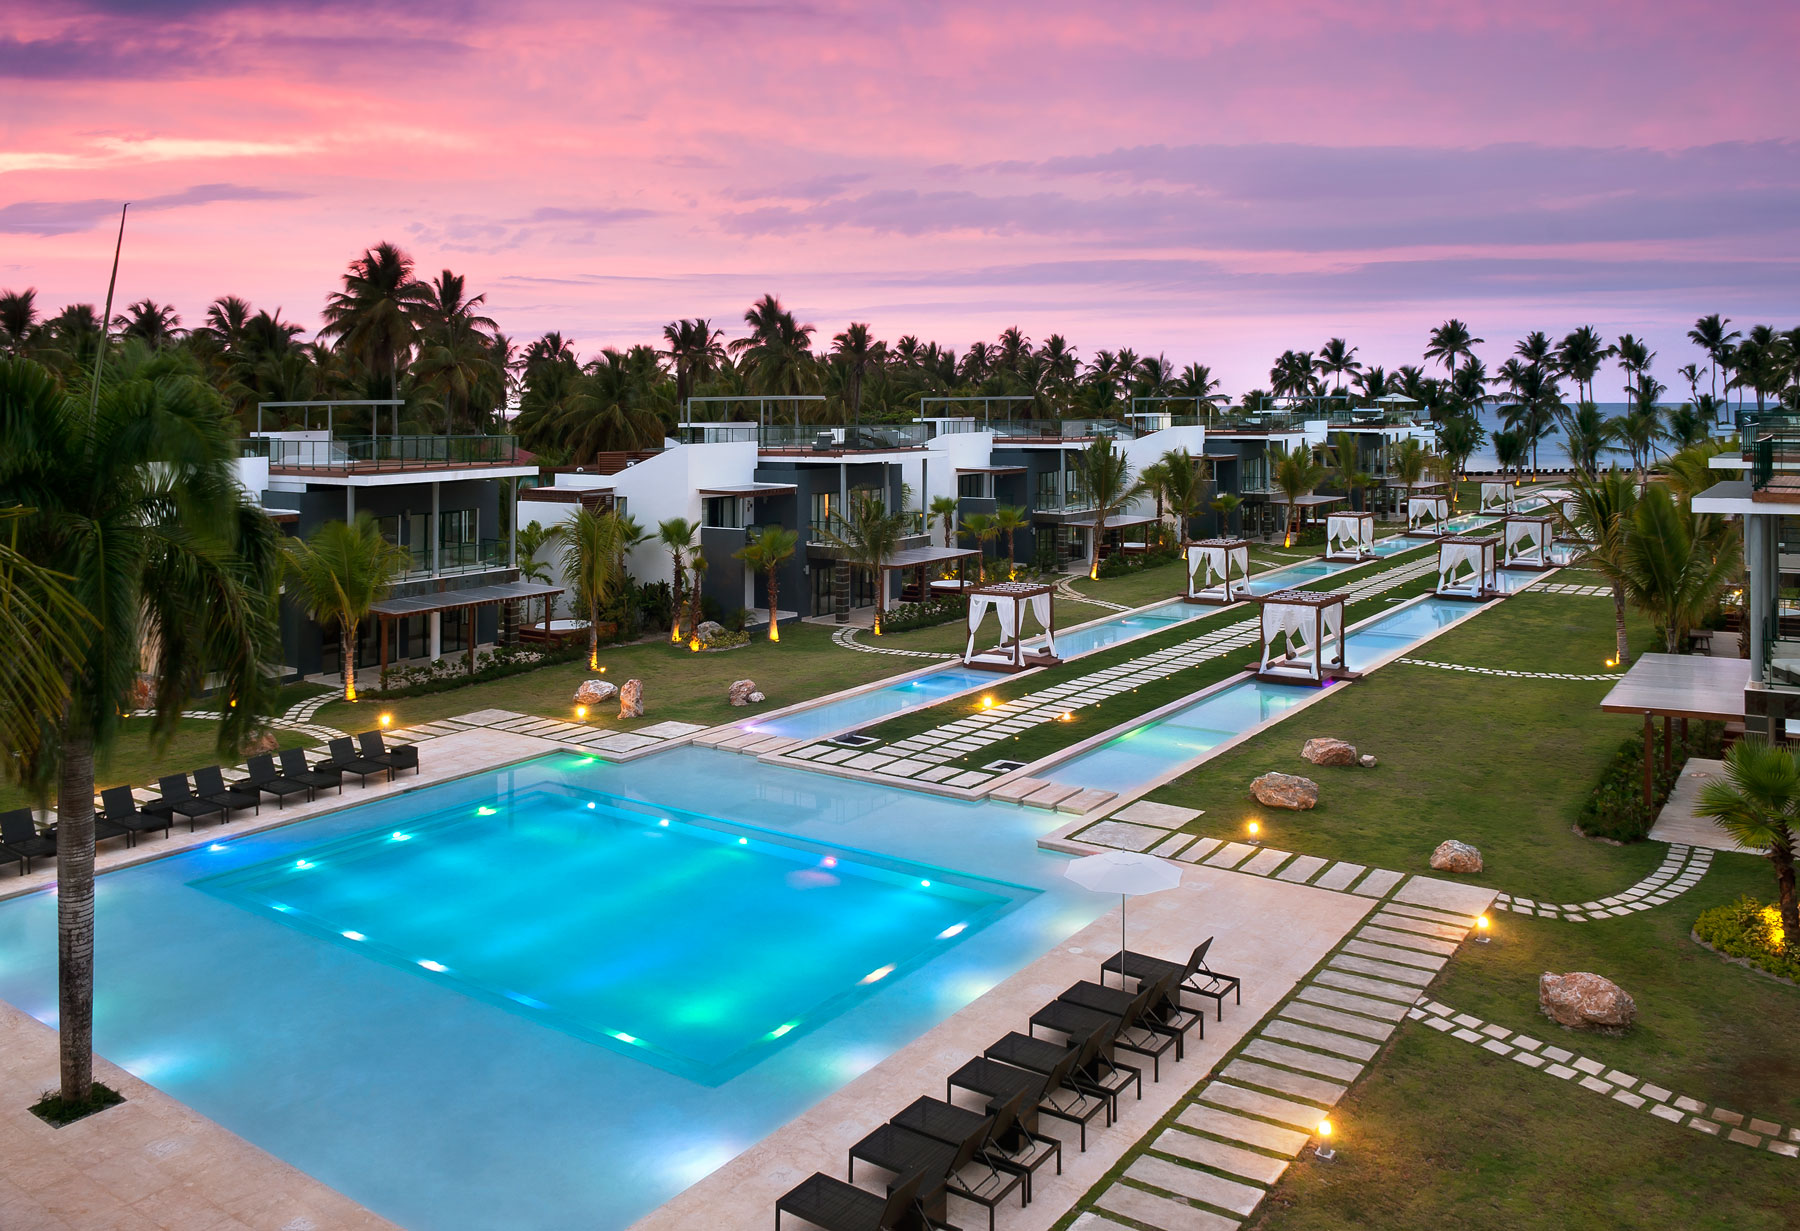 The Sublime Samana Hotel in the Dominican Republic | Architecture & Design